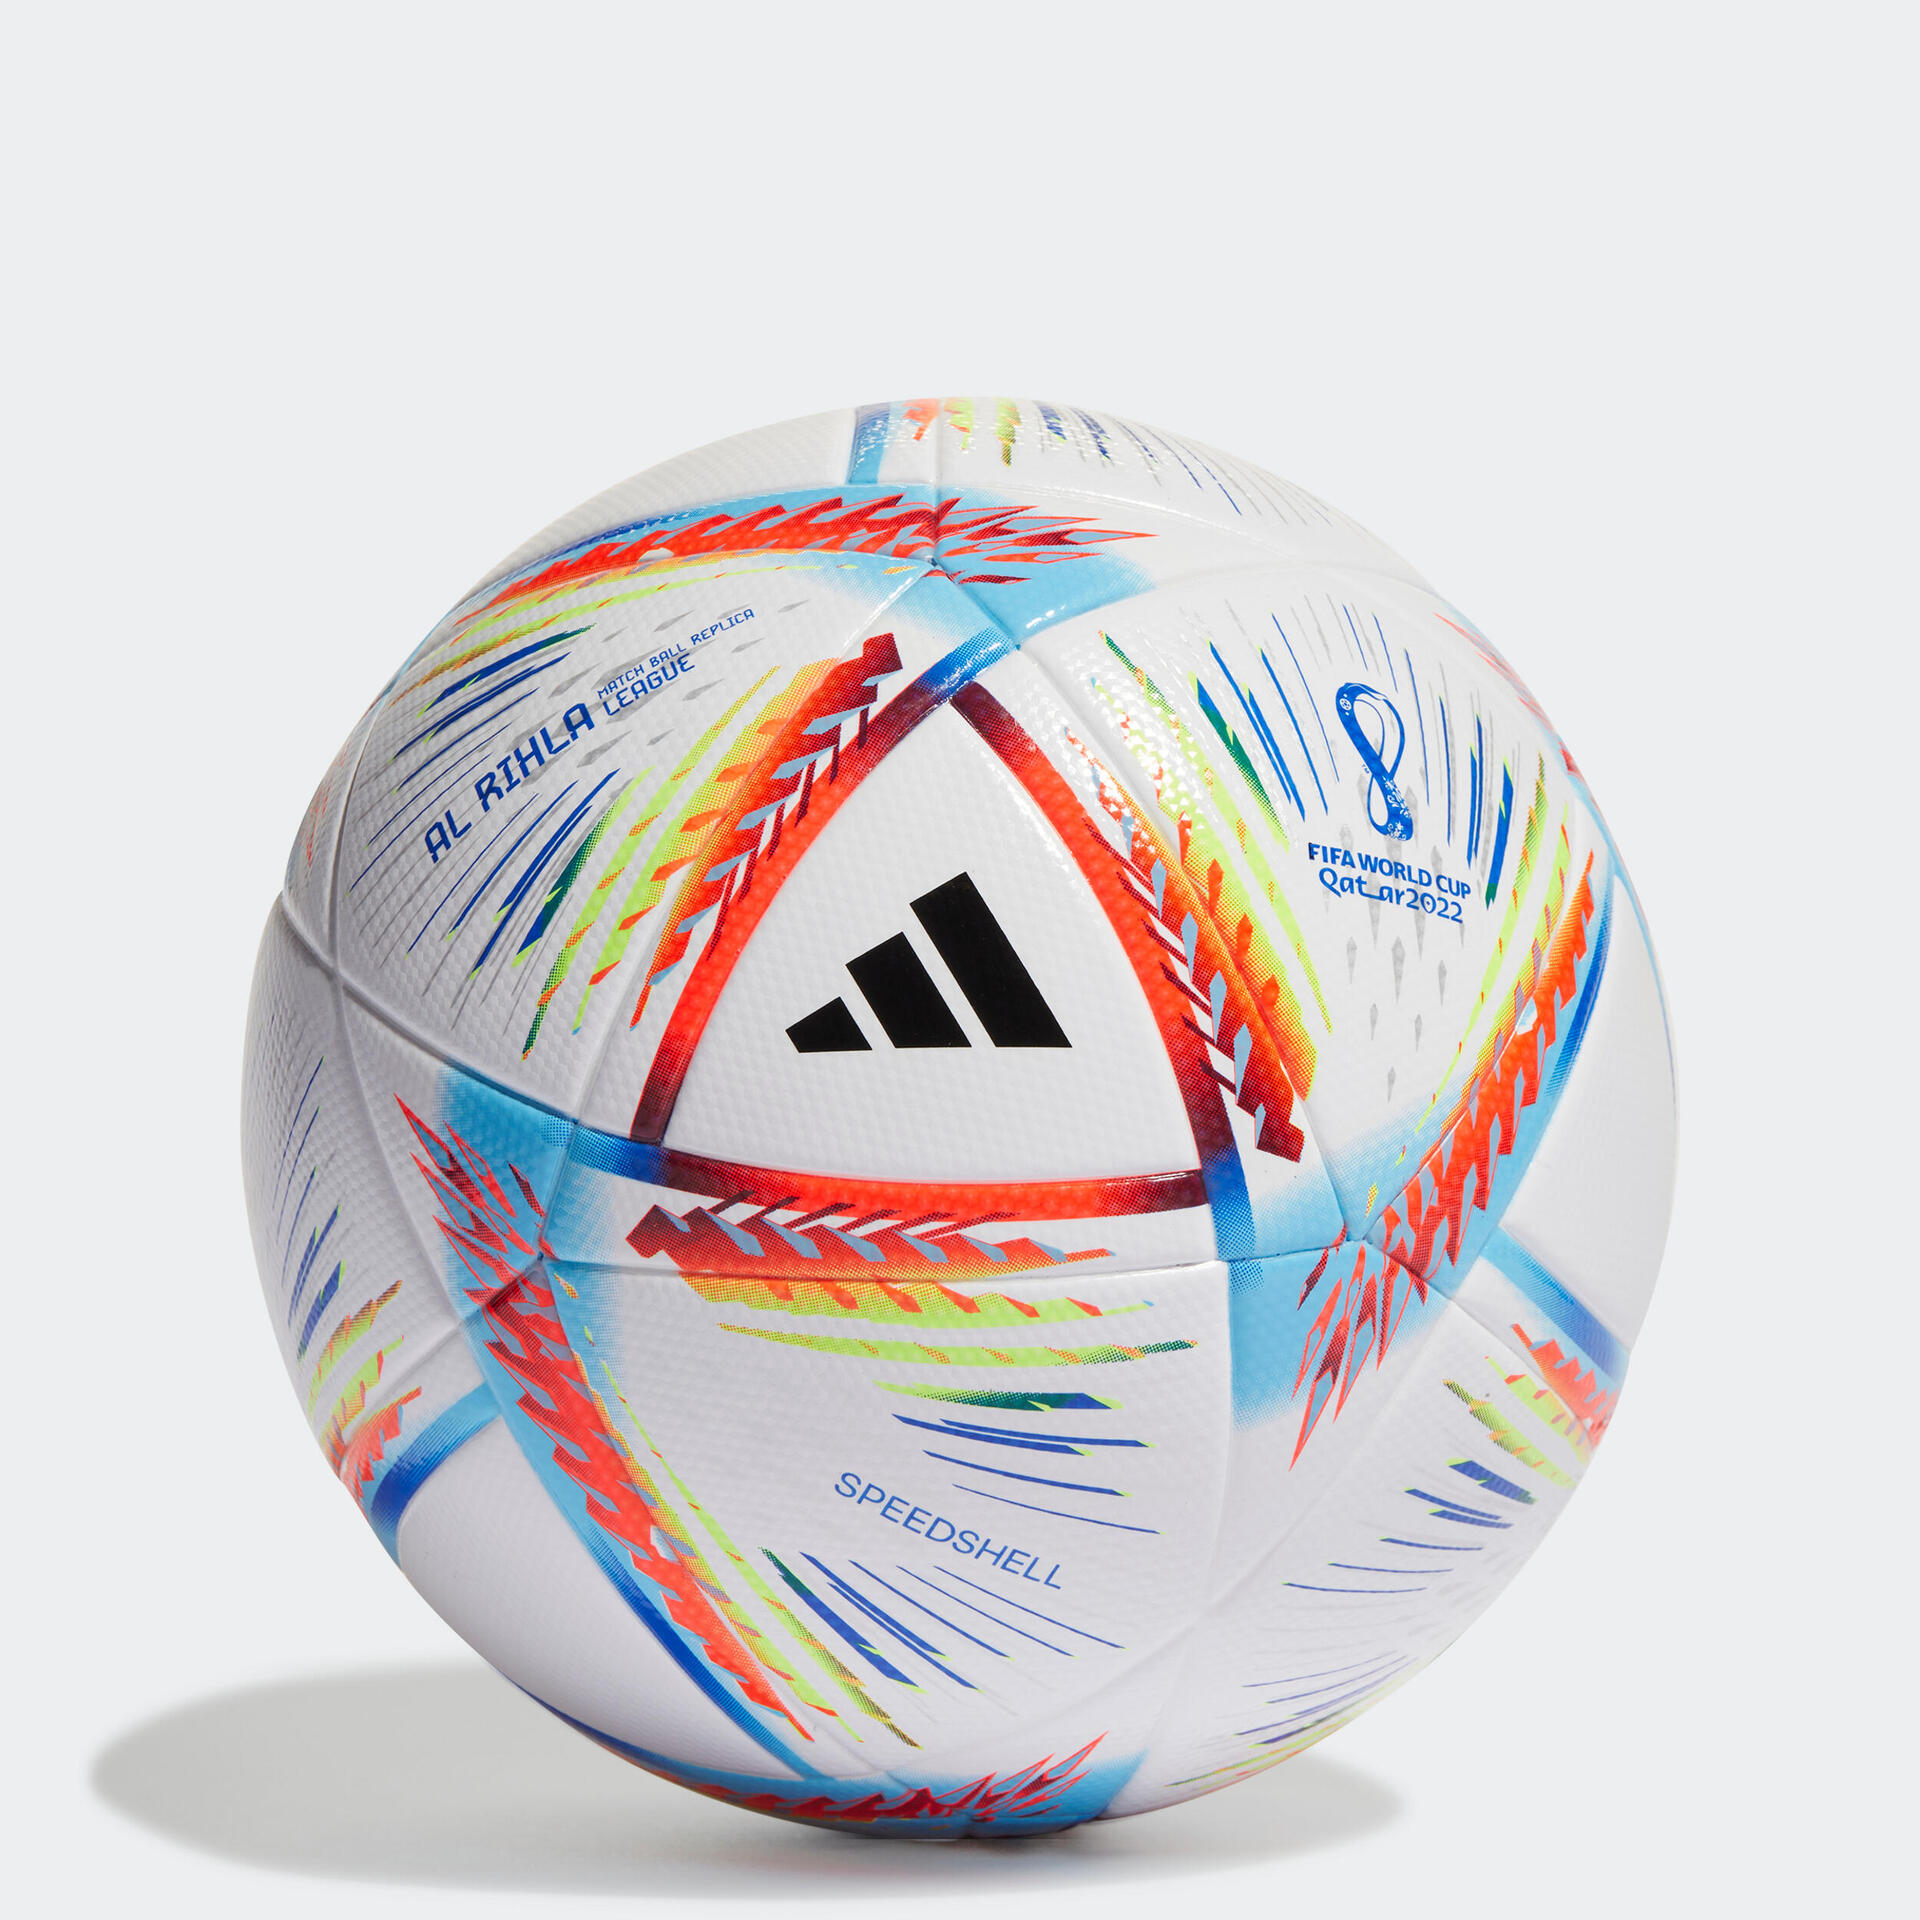 Adidas Al Rihla : le ballon de football de 2022 !